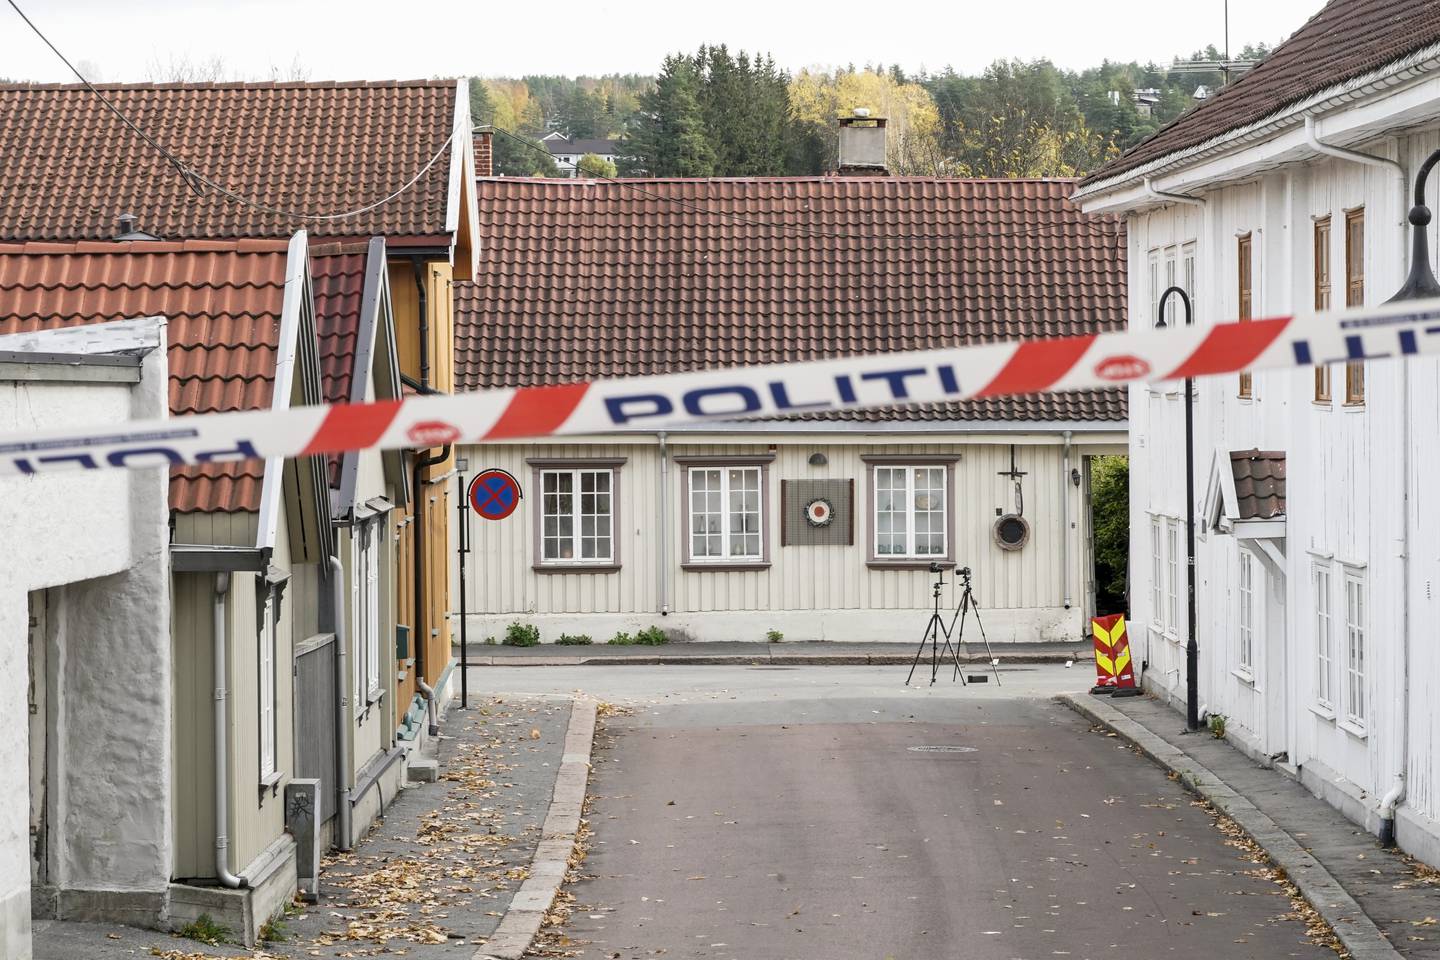 Kongsberg 20211015. 
Politiet fortsetter arbeidet i Kongsberg etter at en mann drepte fem personer onsdag.
Foto: Terje Pedersen / NTB